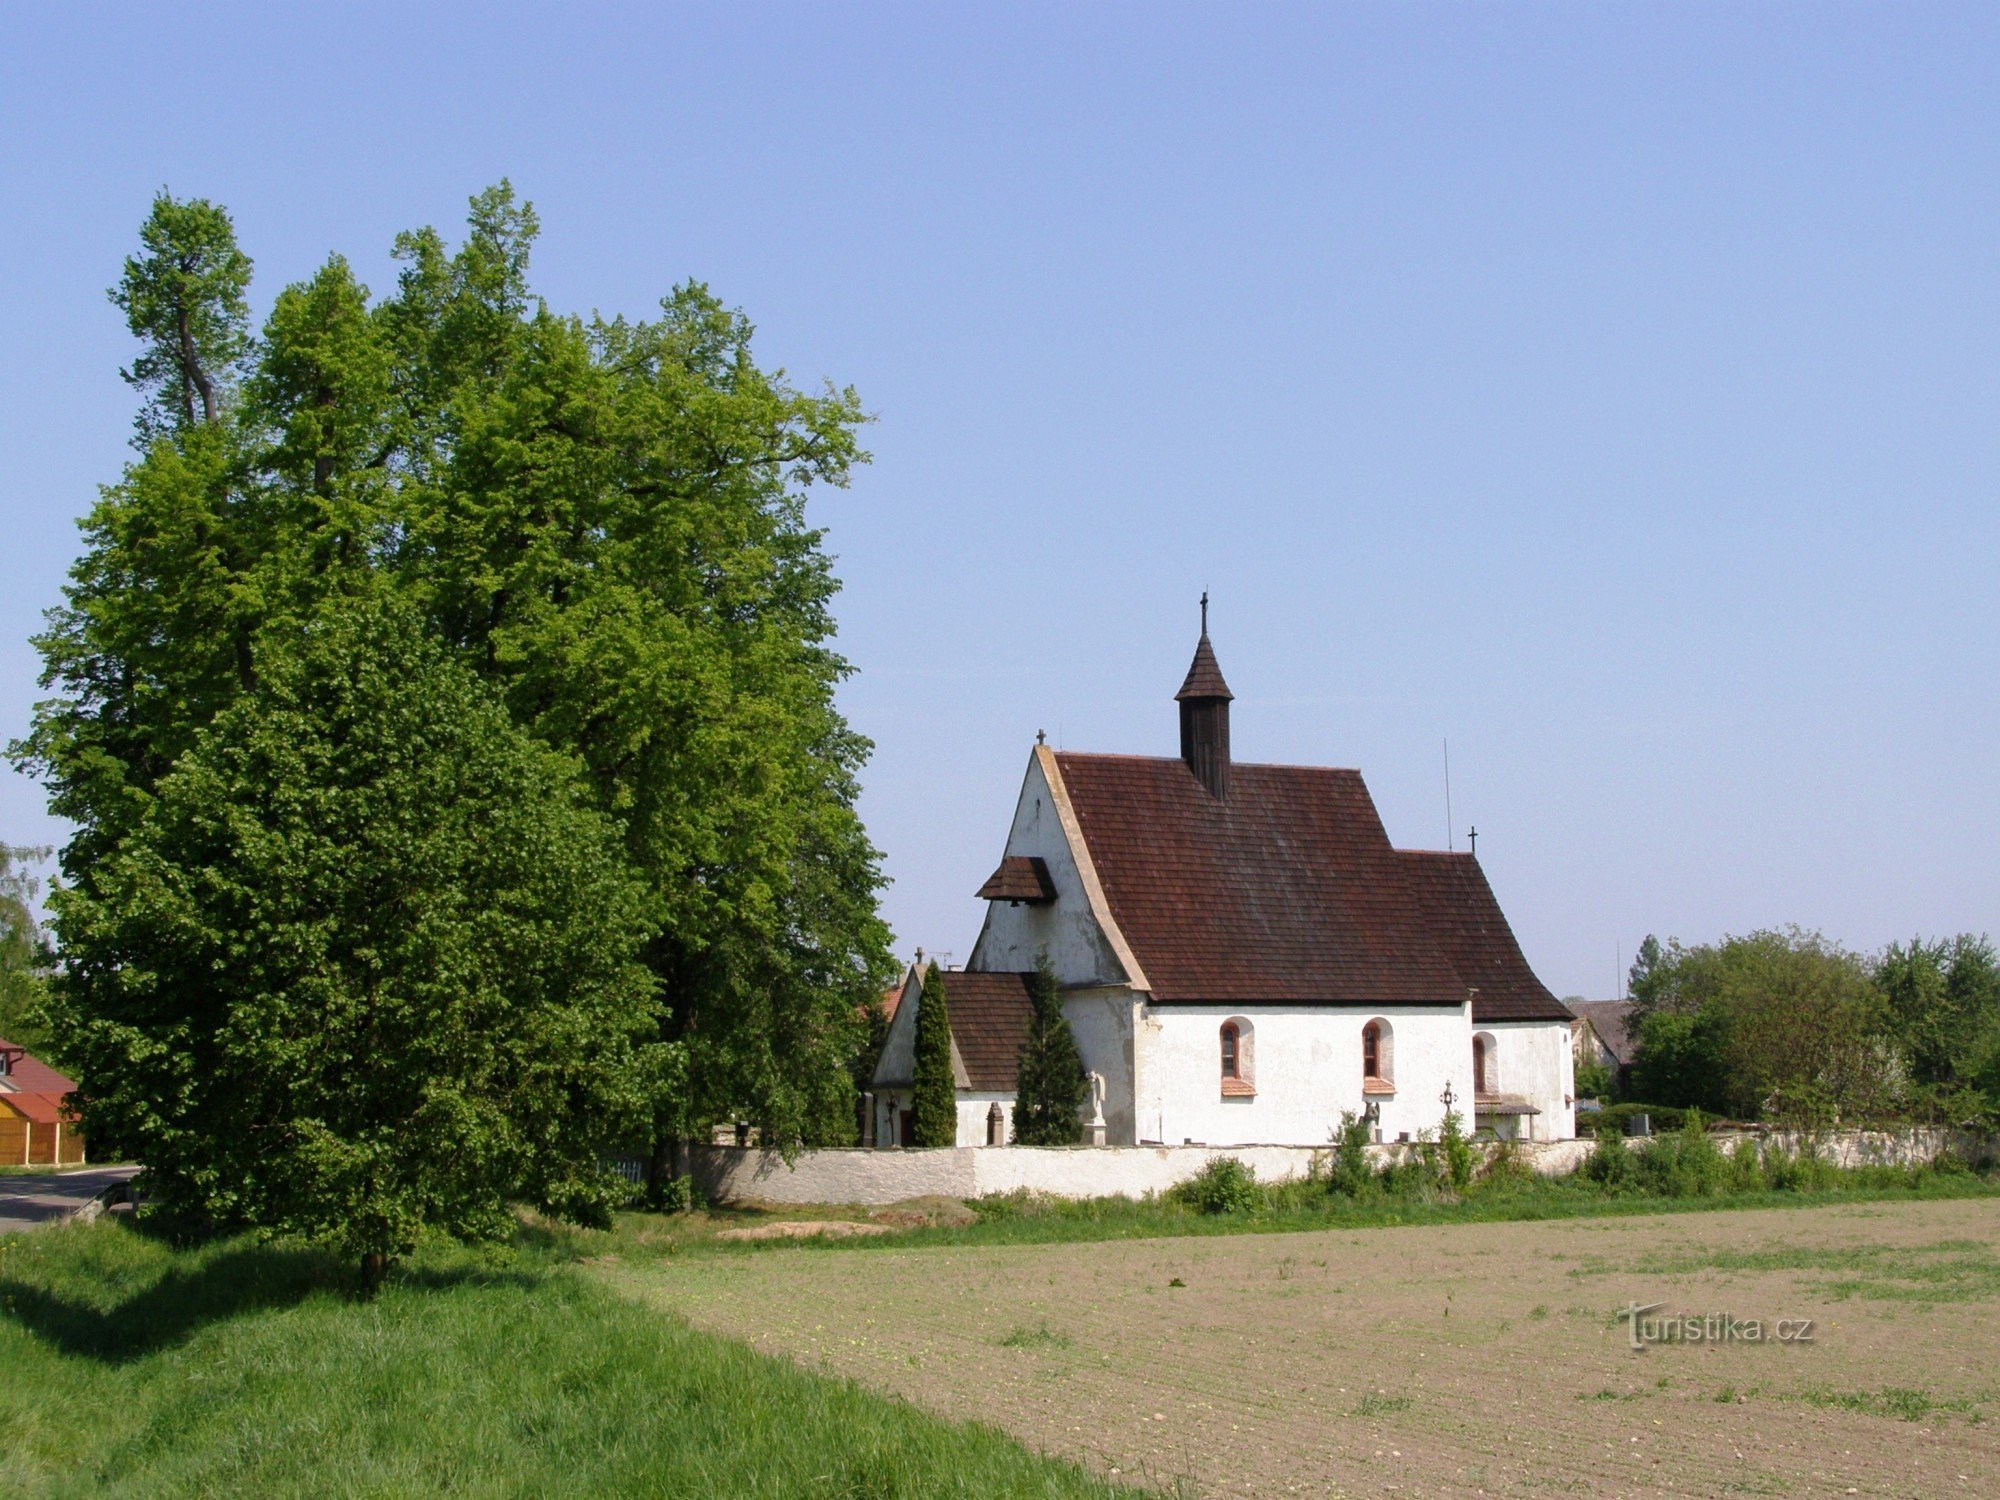 Ledce - cerkev sv. Marija Magdalena